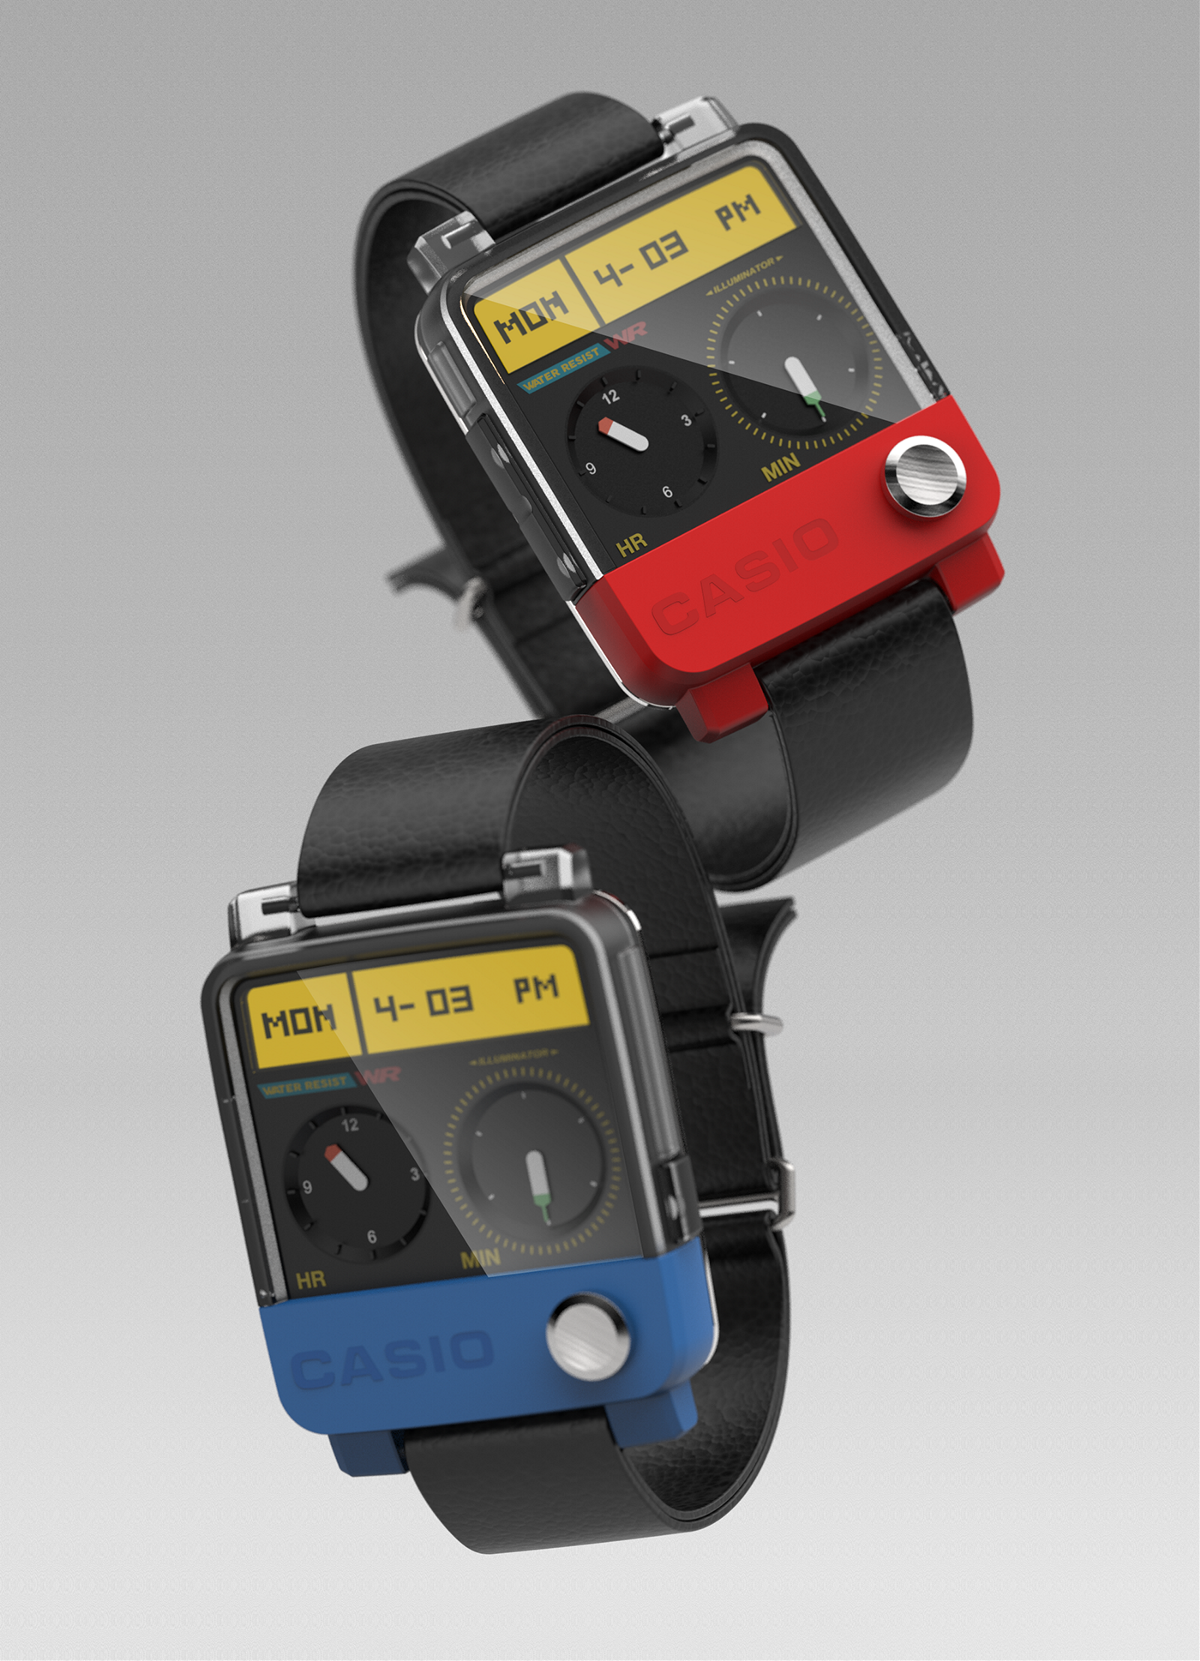 CASIO Watch——优秀工业设计产品推荐